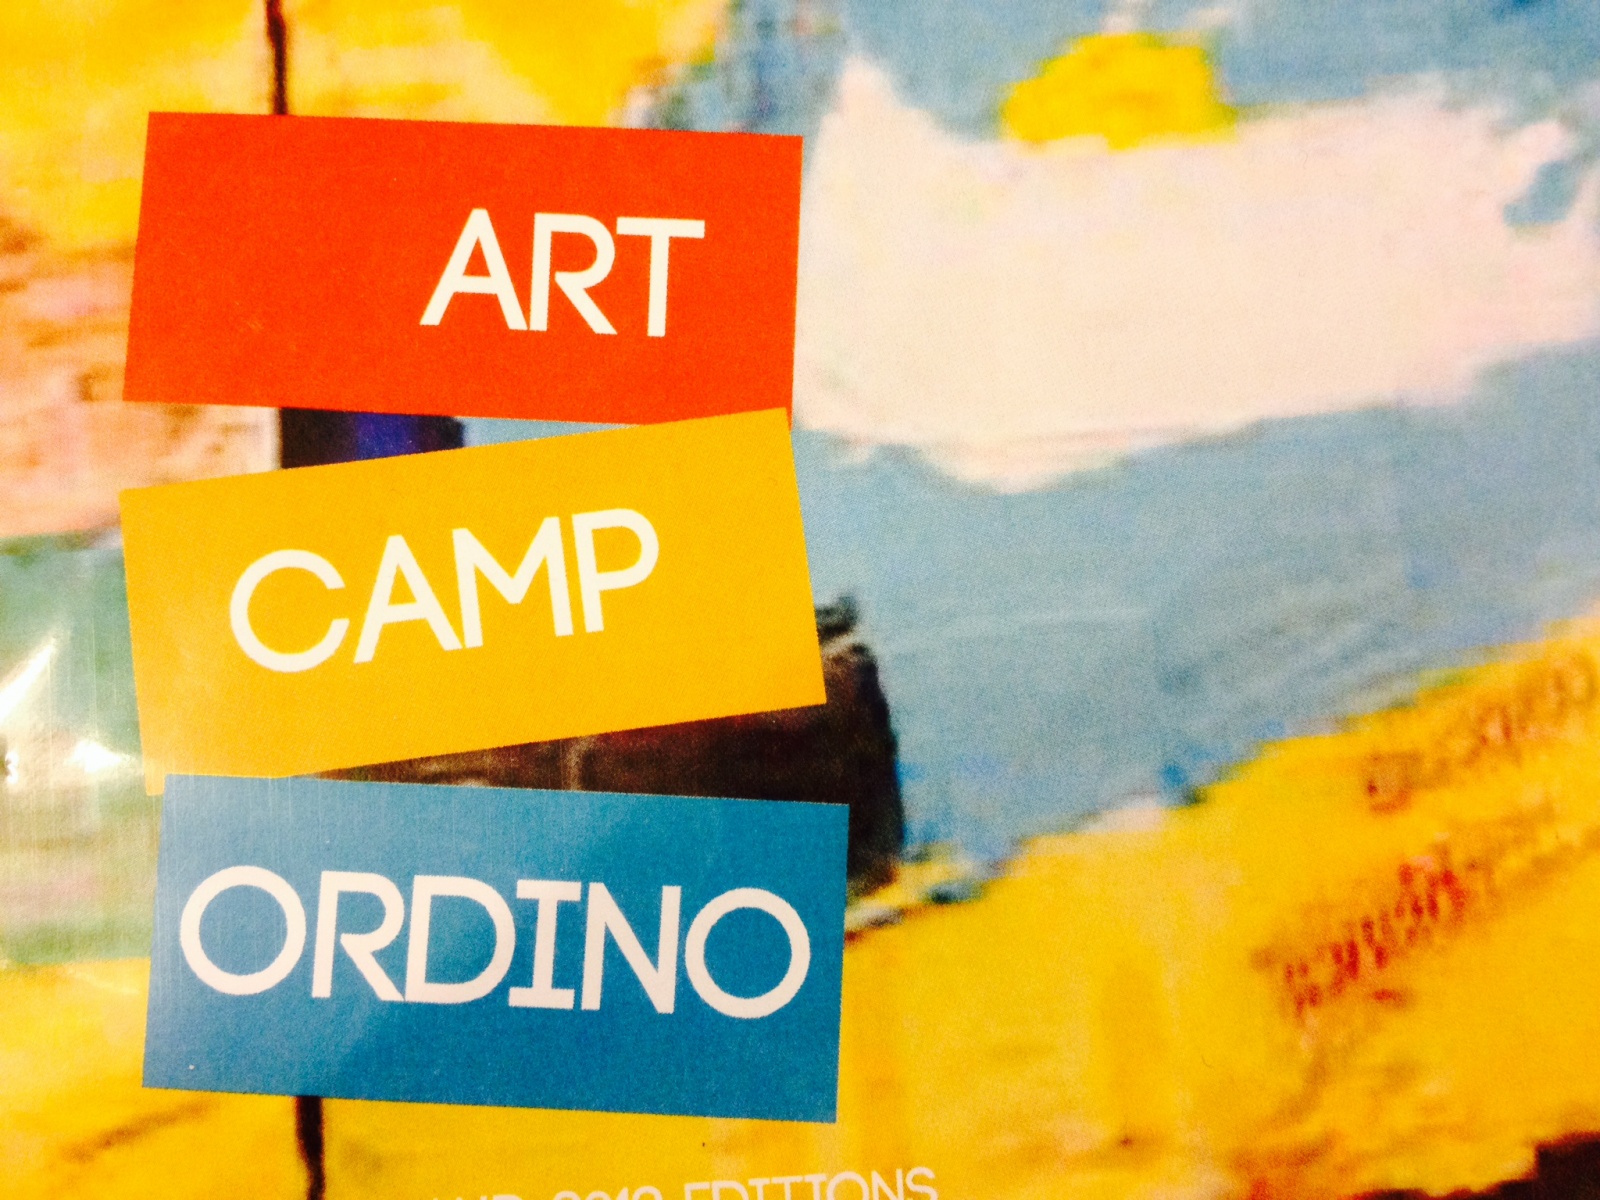 L'Art Camp torna a Ordino el proper estiu